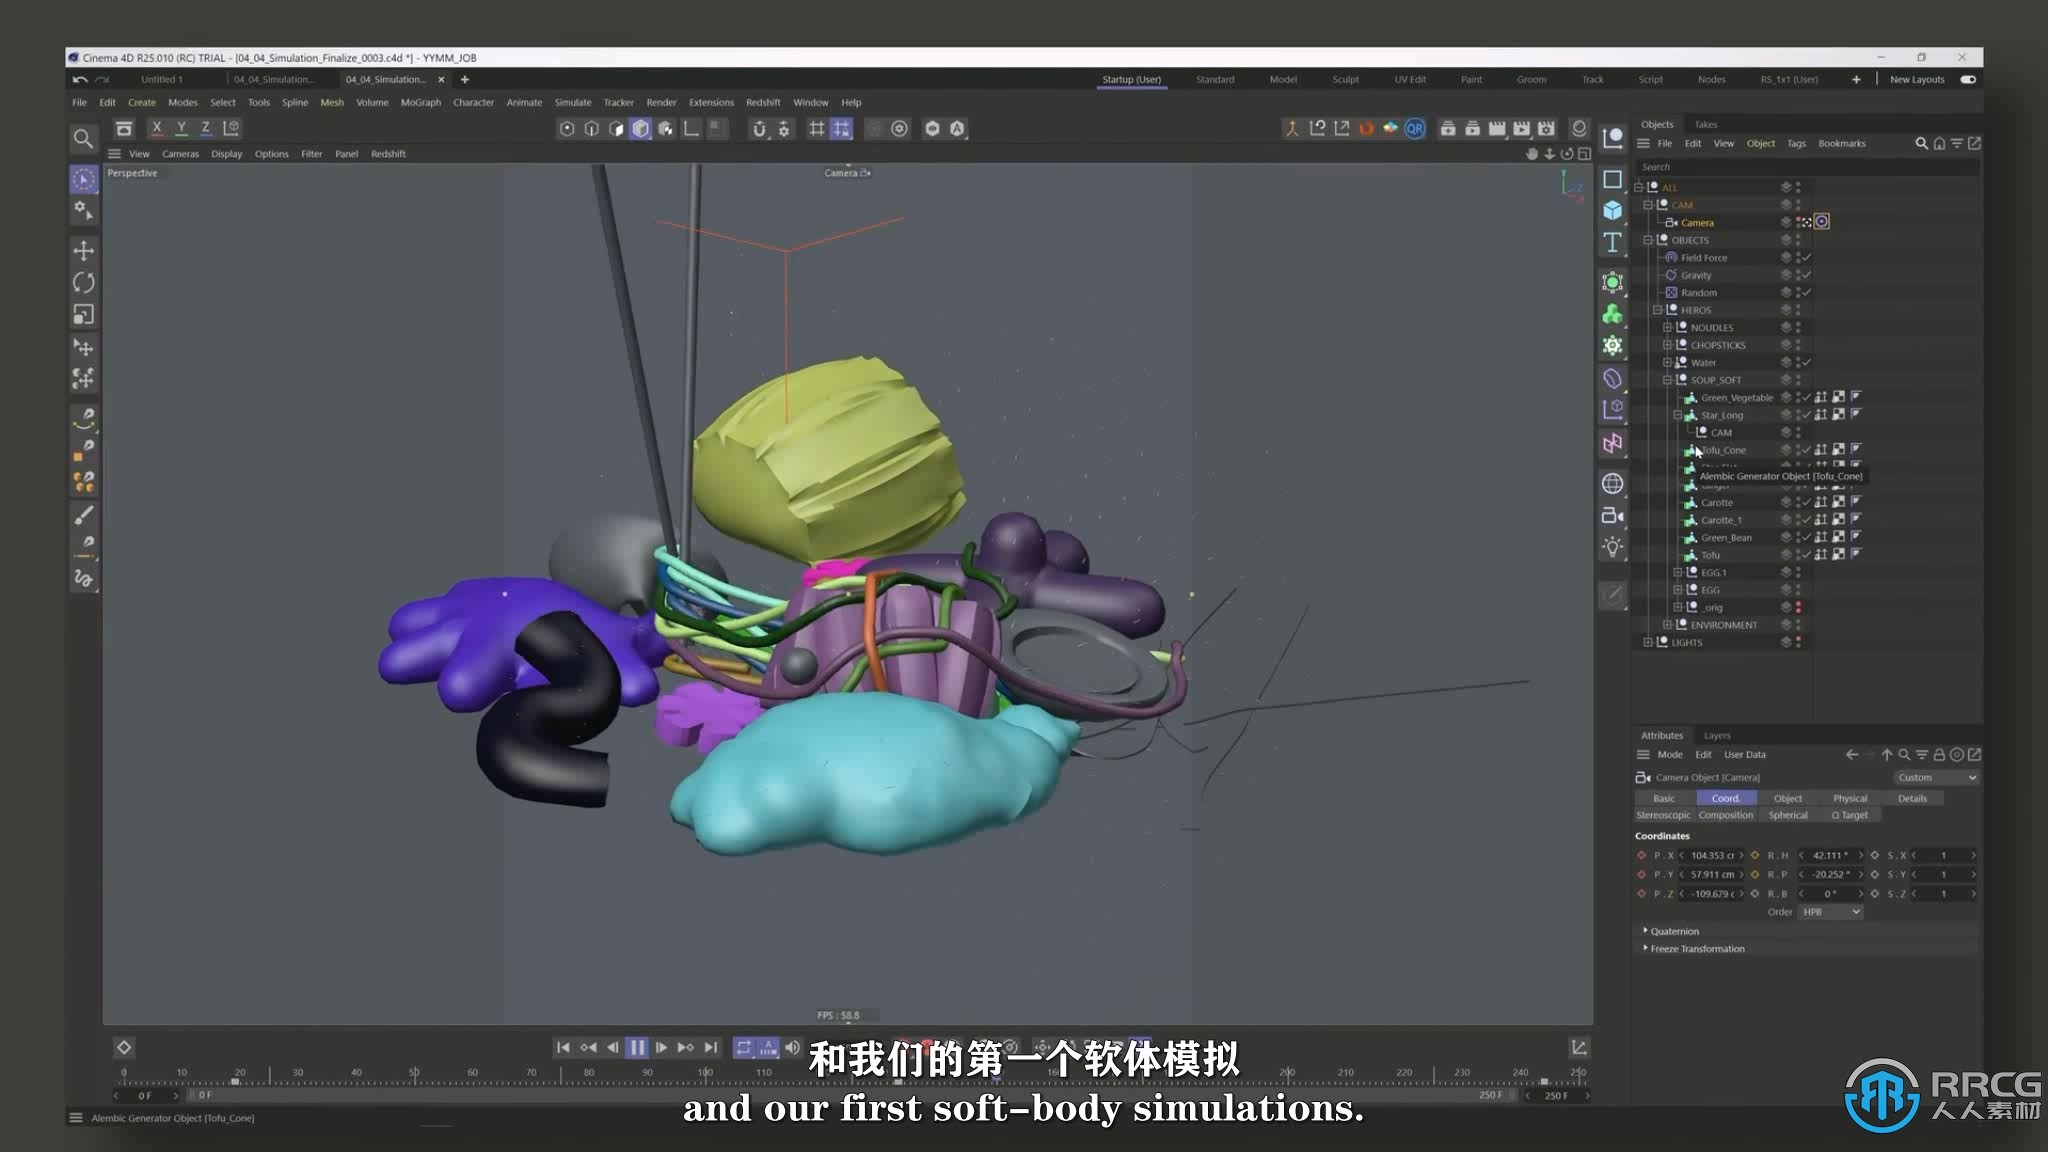 【中文字幕】C4D抽象形状有趣3D动画设计技术视频教程